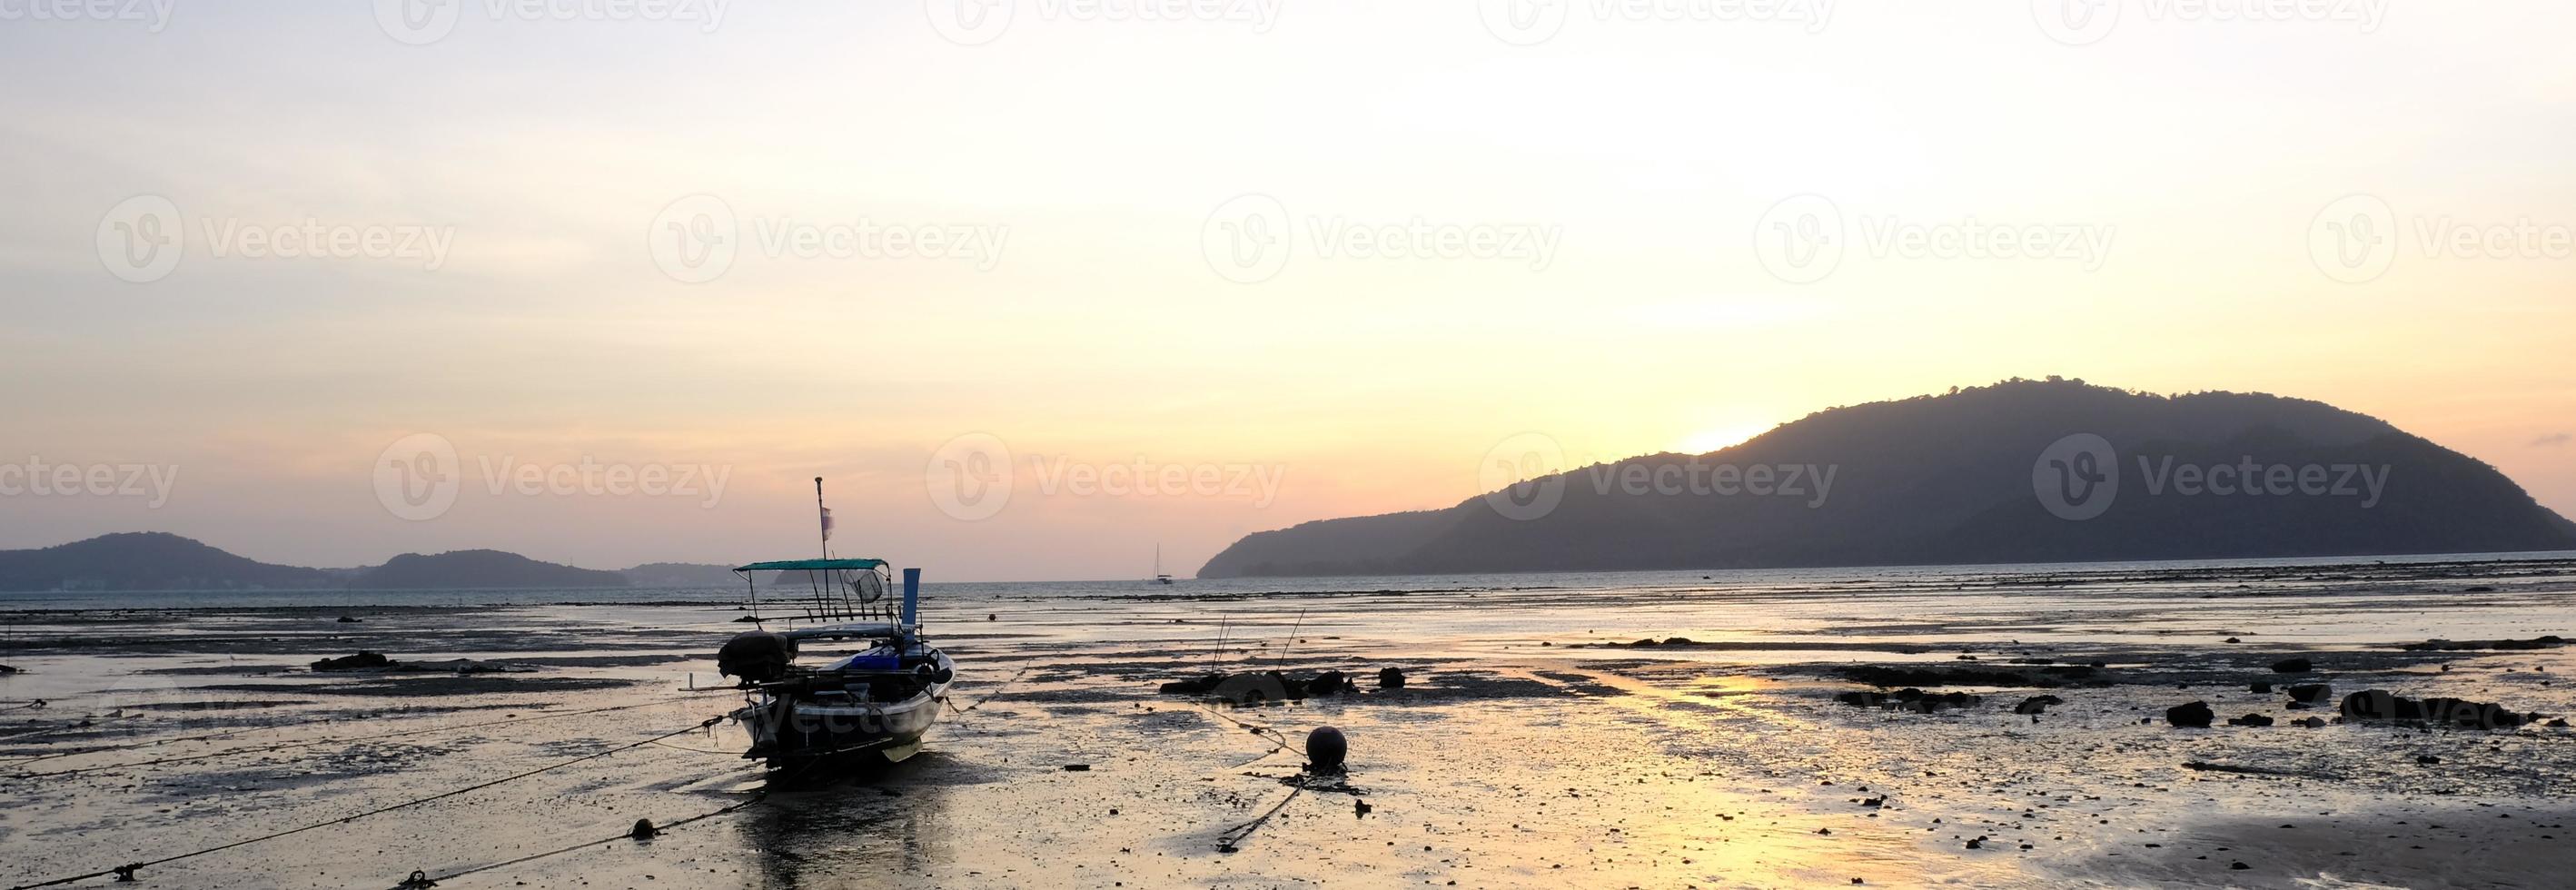 barco na praia de manhã antes do nascer do sol atrás da montanha foto